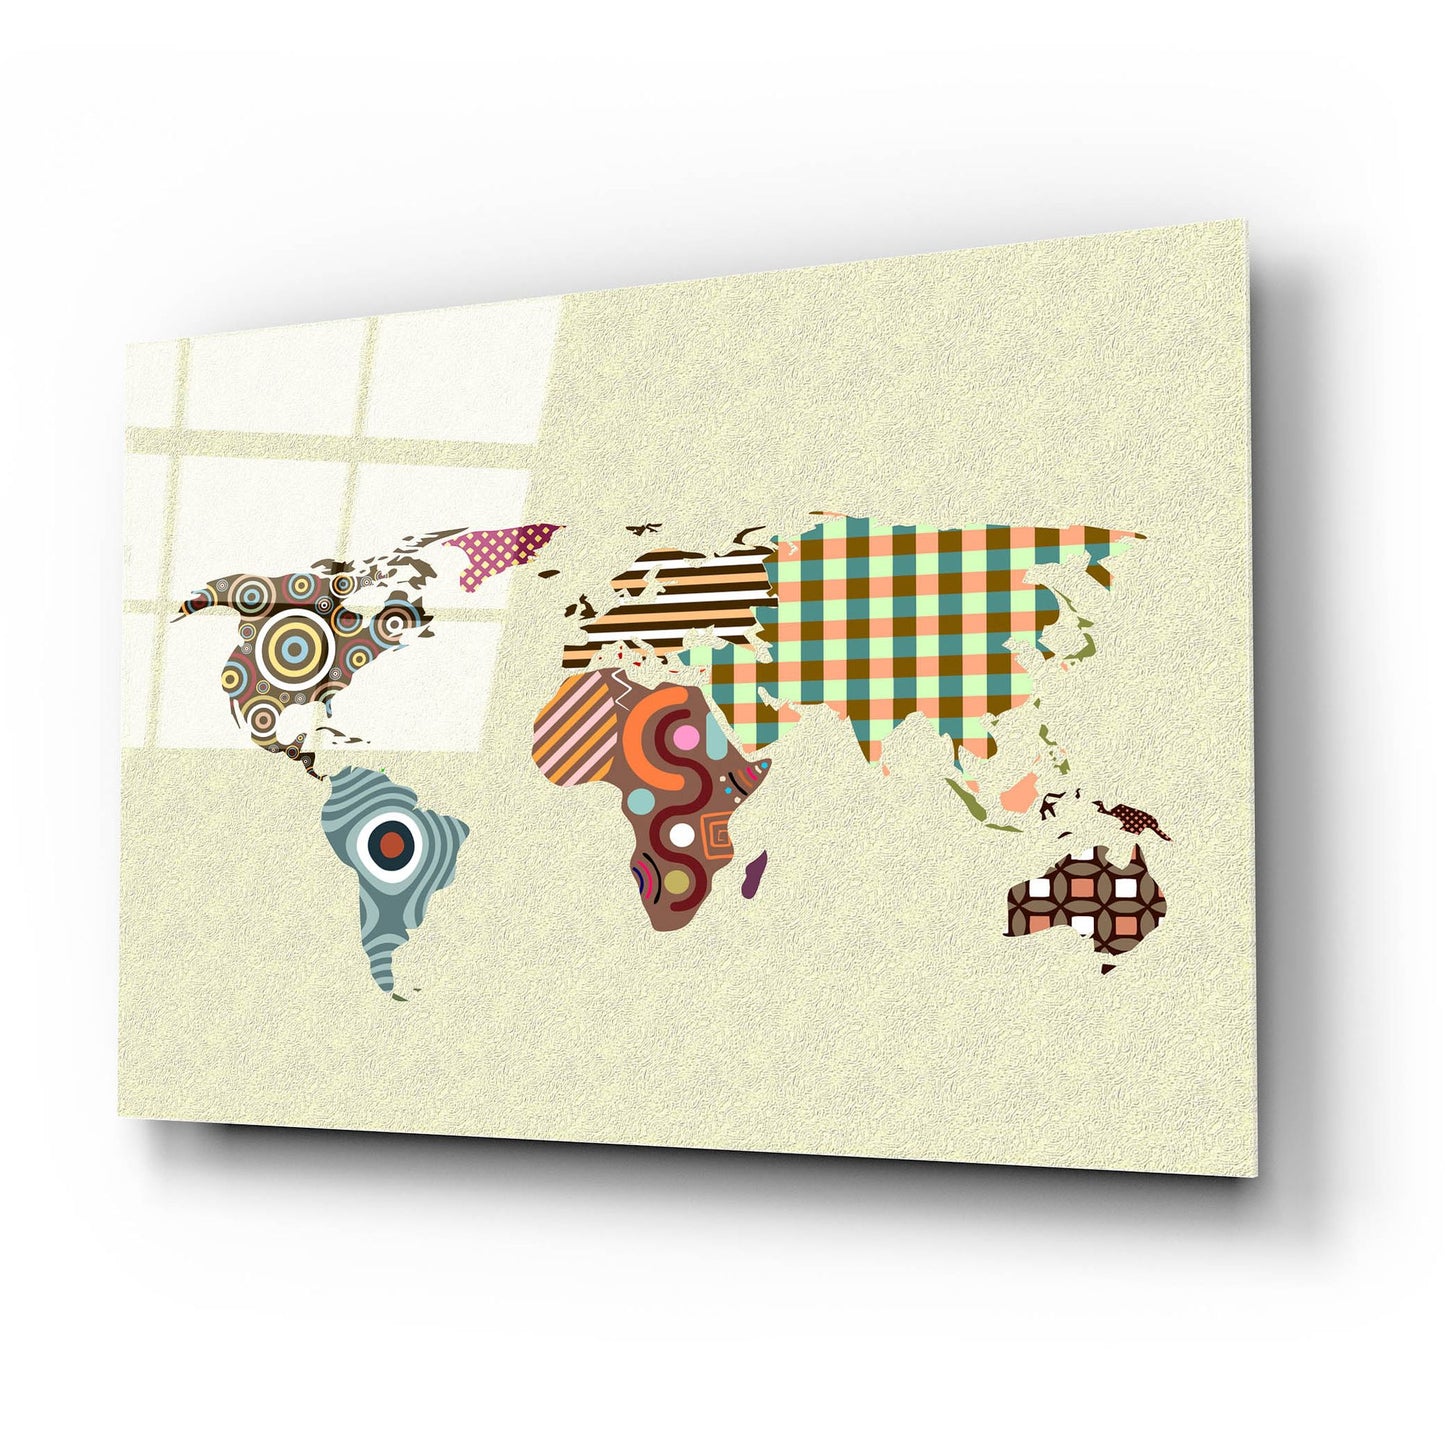 Epic Art 'World Map' by Lanre Adefioye, Acrylic Glass Wall Art,24x16